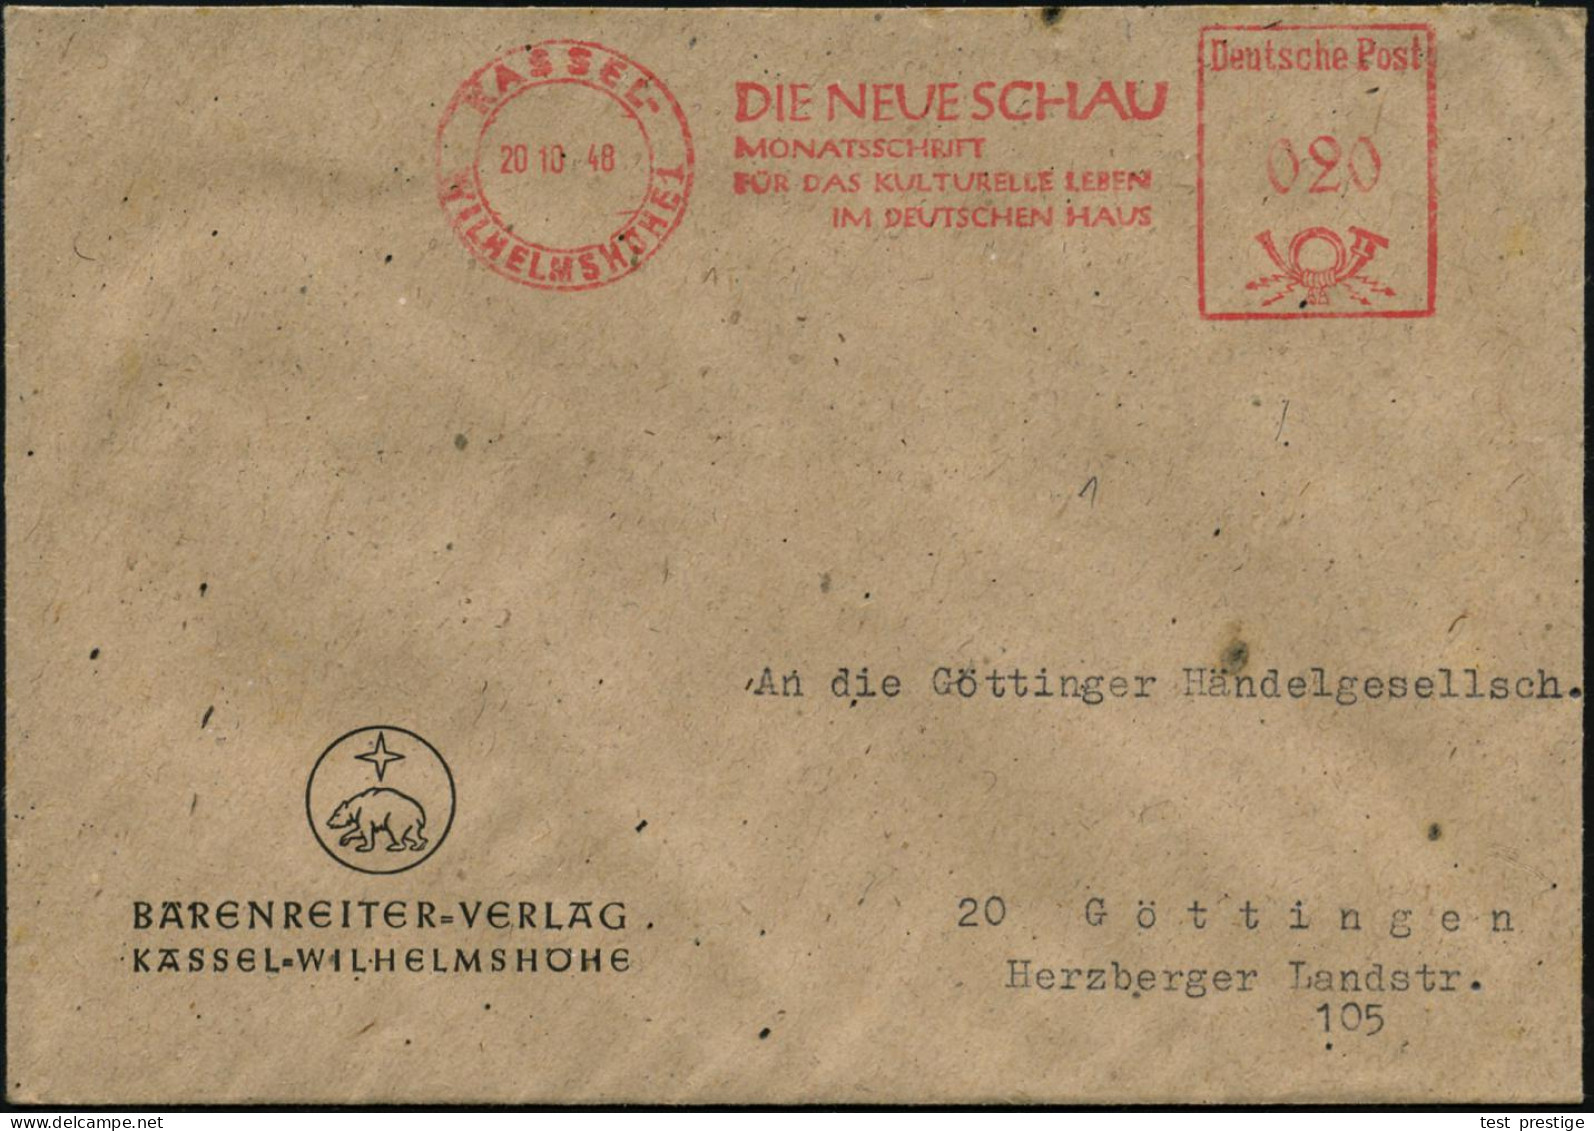 KASSEL-/ WILHELMSHÖHE 1/ DIE NEUE SCHAUMONATSZEITSCHRIFT... 1948 (20.10.) AFS Francotyp "Posthorn - Deutsche Post" Auf F - Music